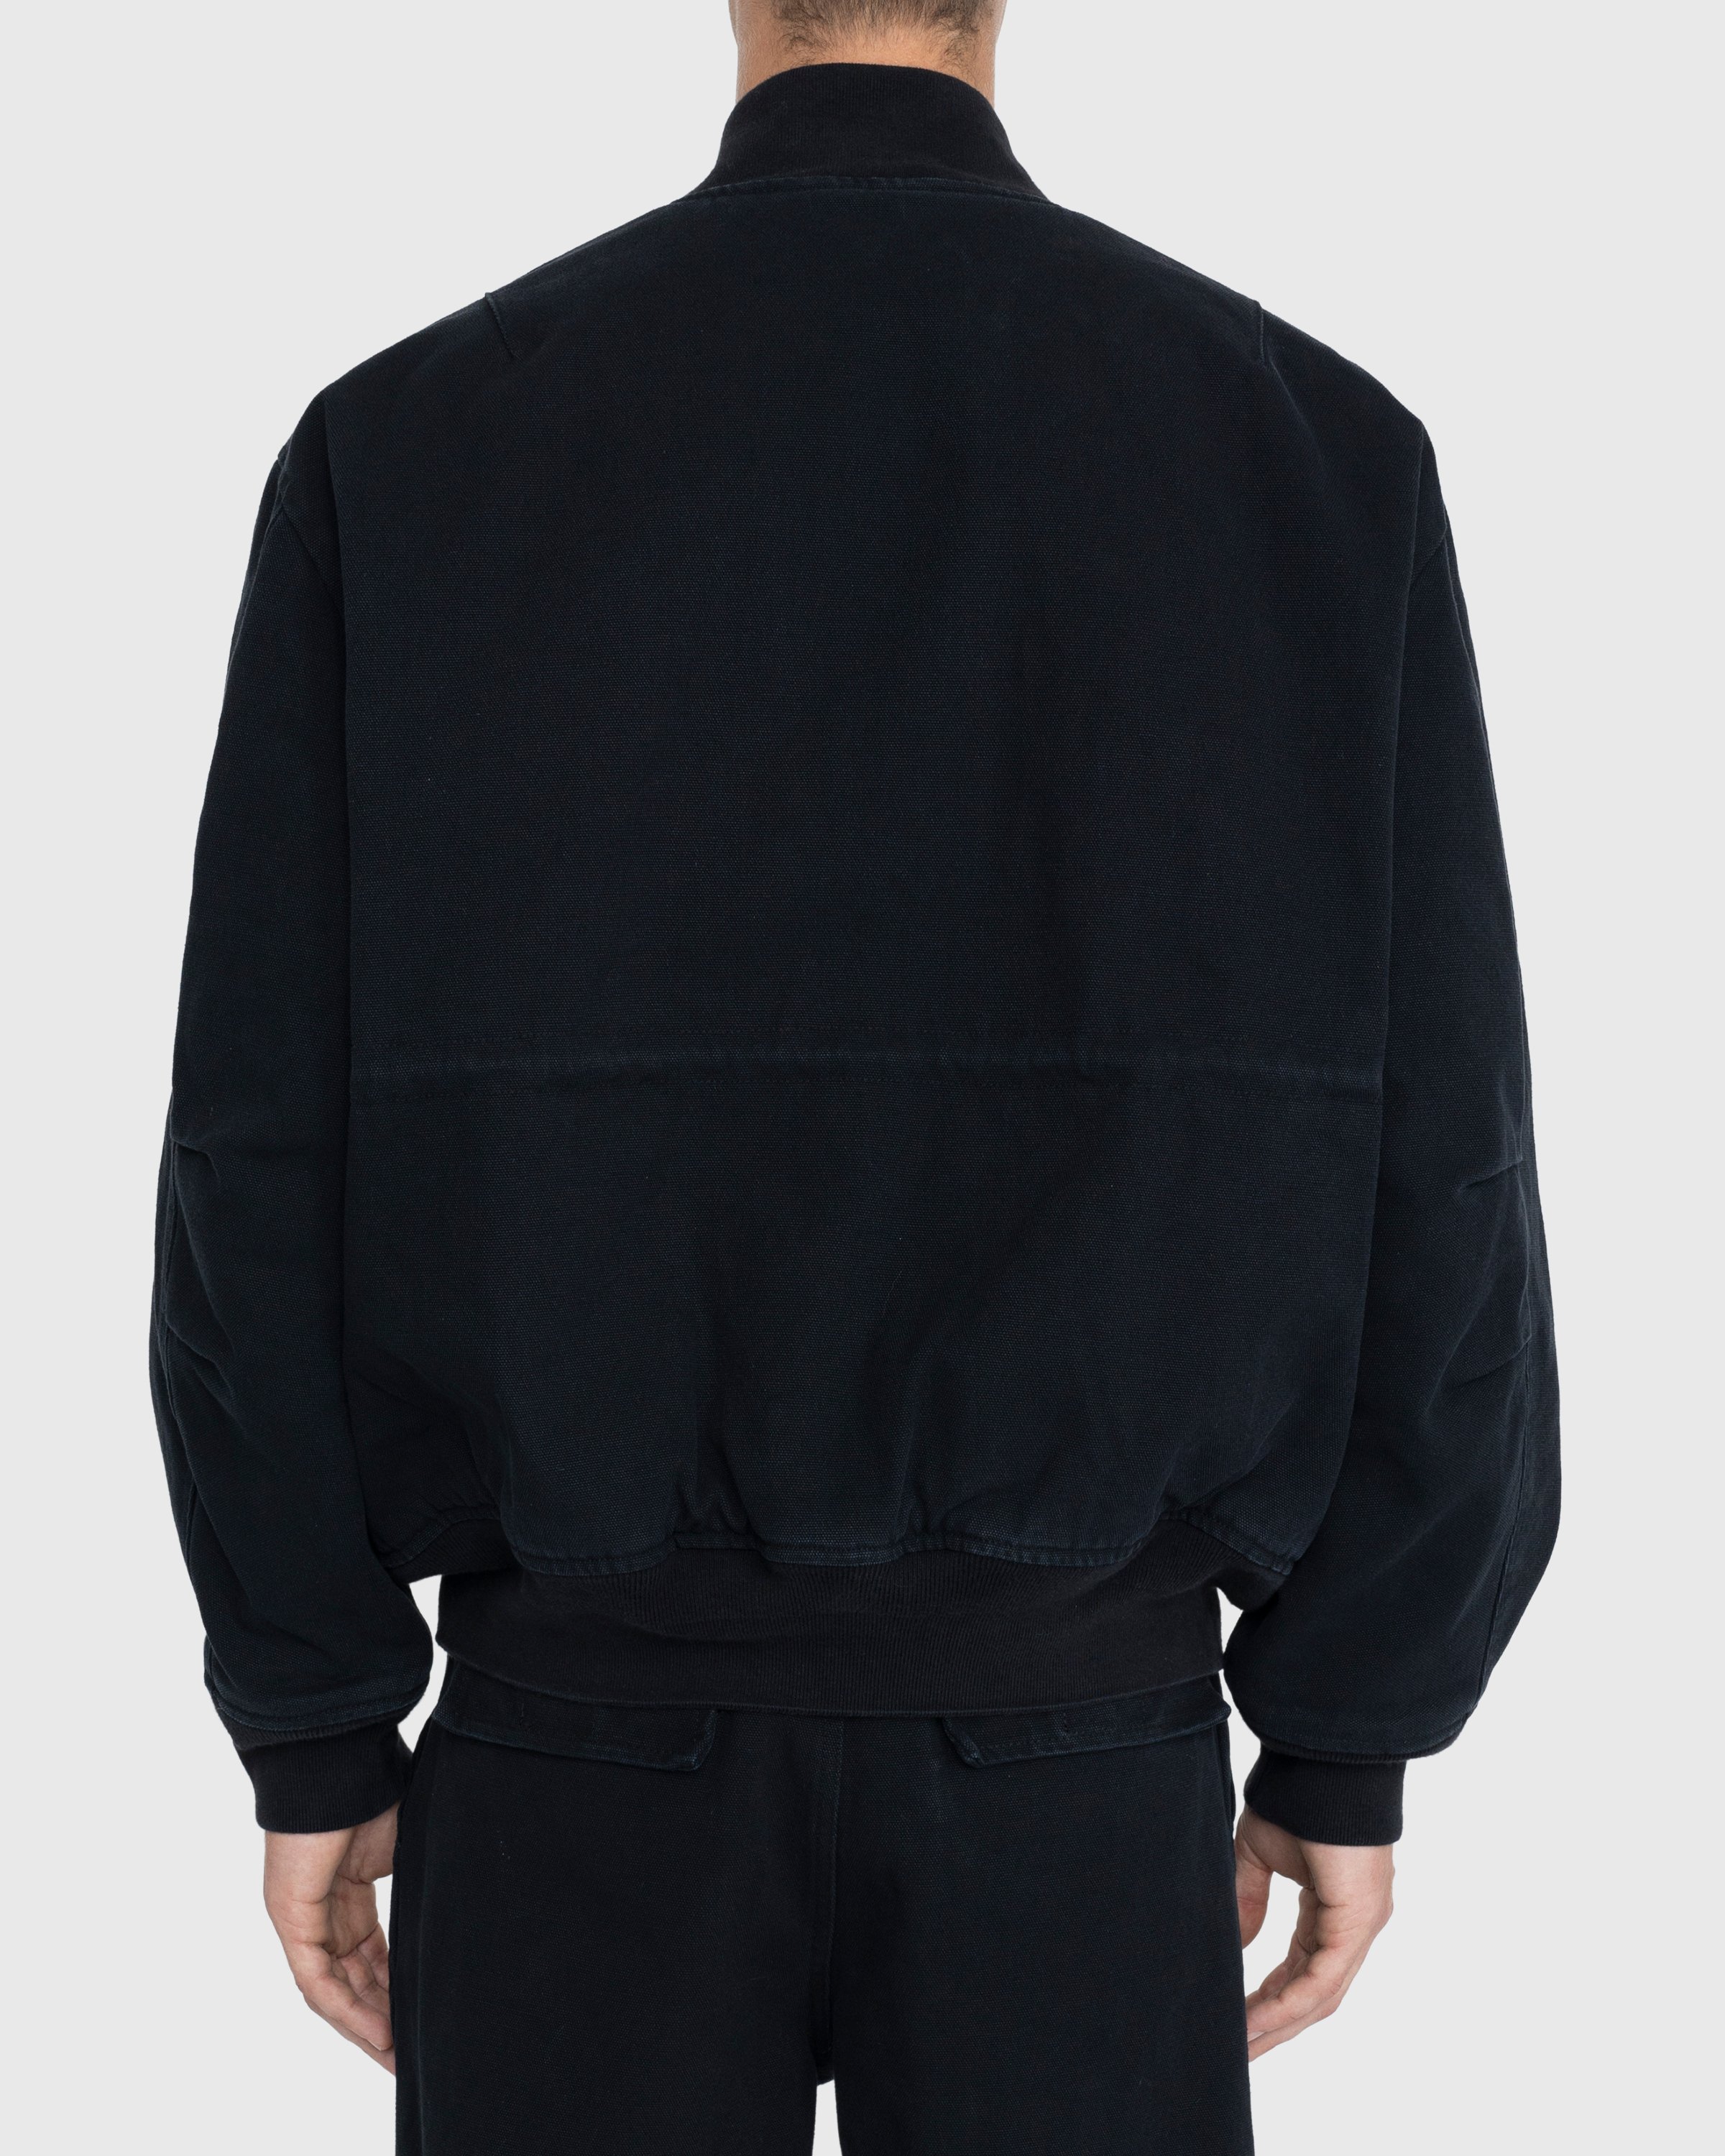 Acne Studios - Organic Cotton Bomber Jacket Black - Clothing - Black - Image 7